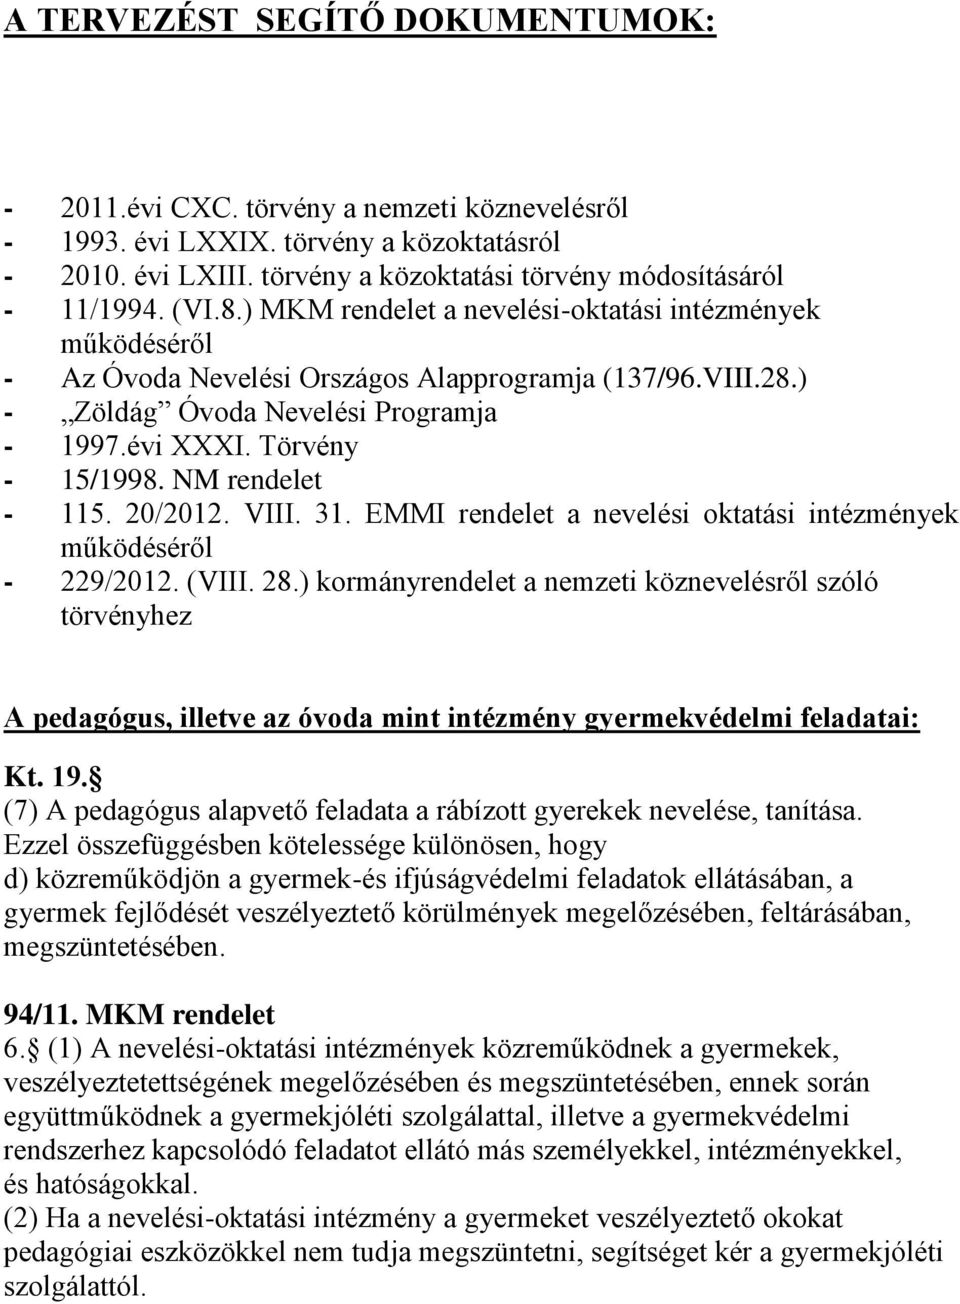 NM rendelet - 115. 20/2012. VIII. 31. EMMI rendelet a nevelési oktatási intézmények működéséről - 229/2012. (VIII. 28.